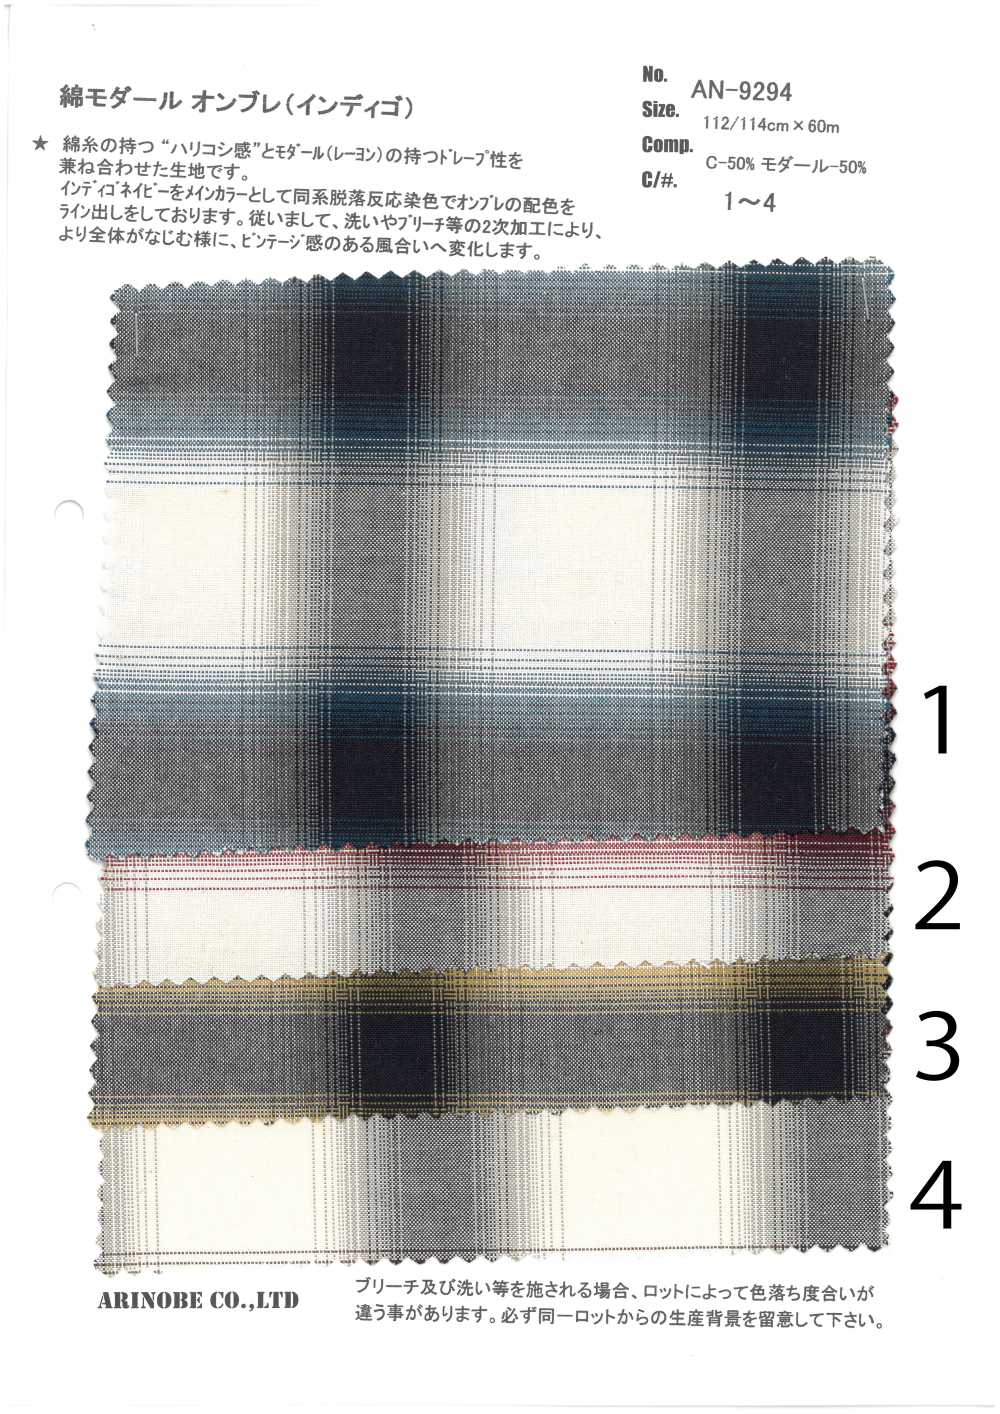 AN-9294 Màu Chàm Bông Modal Nhuộm Ombre[Vải] ARINOBE CO., LTD.